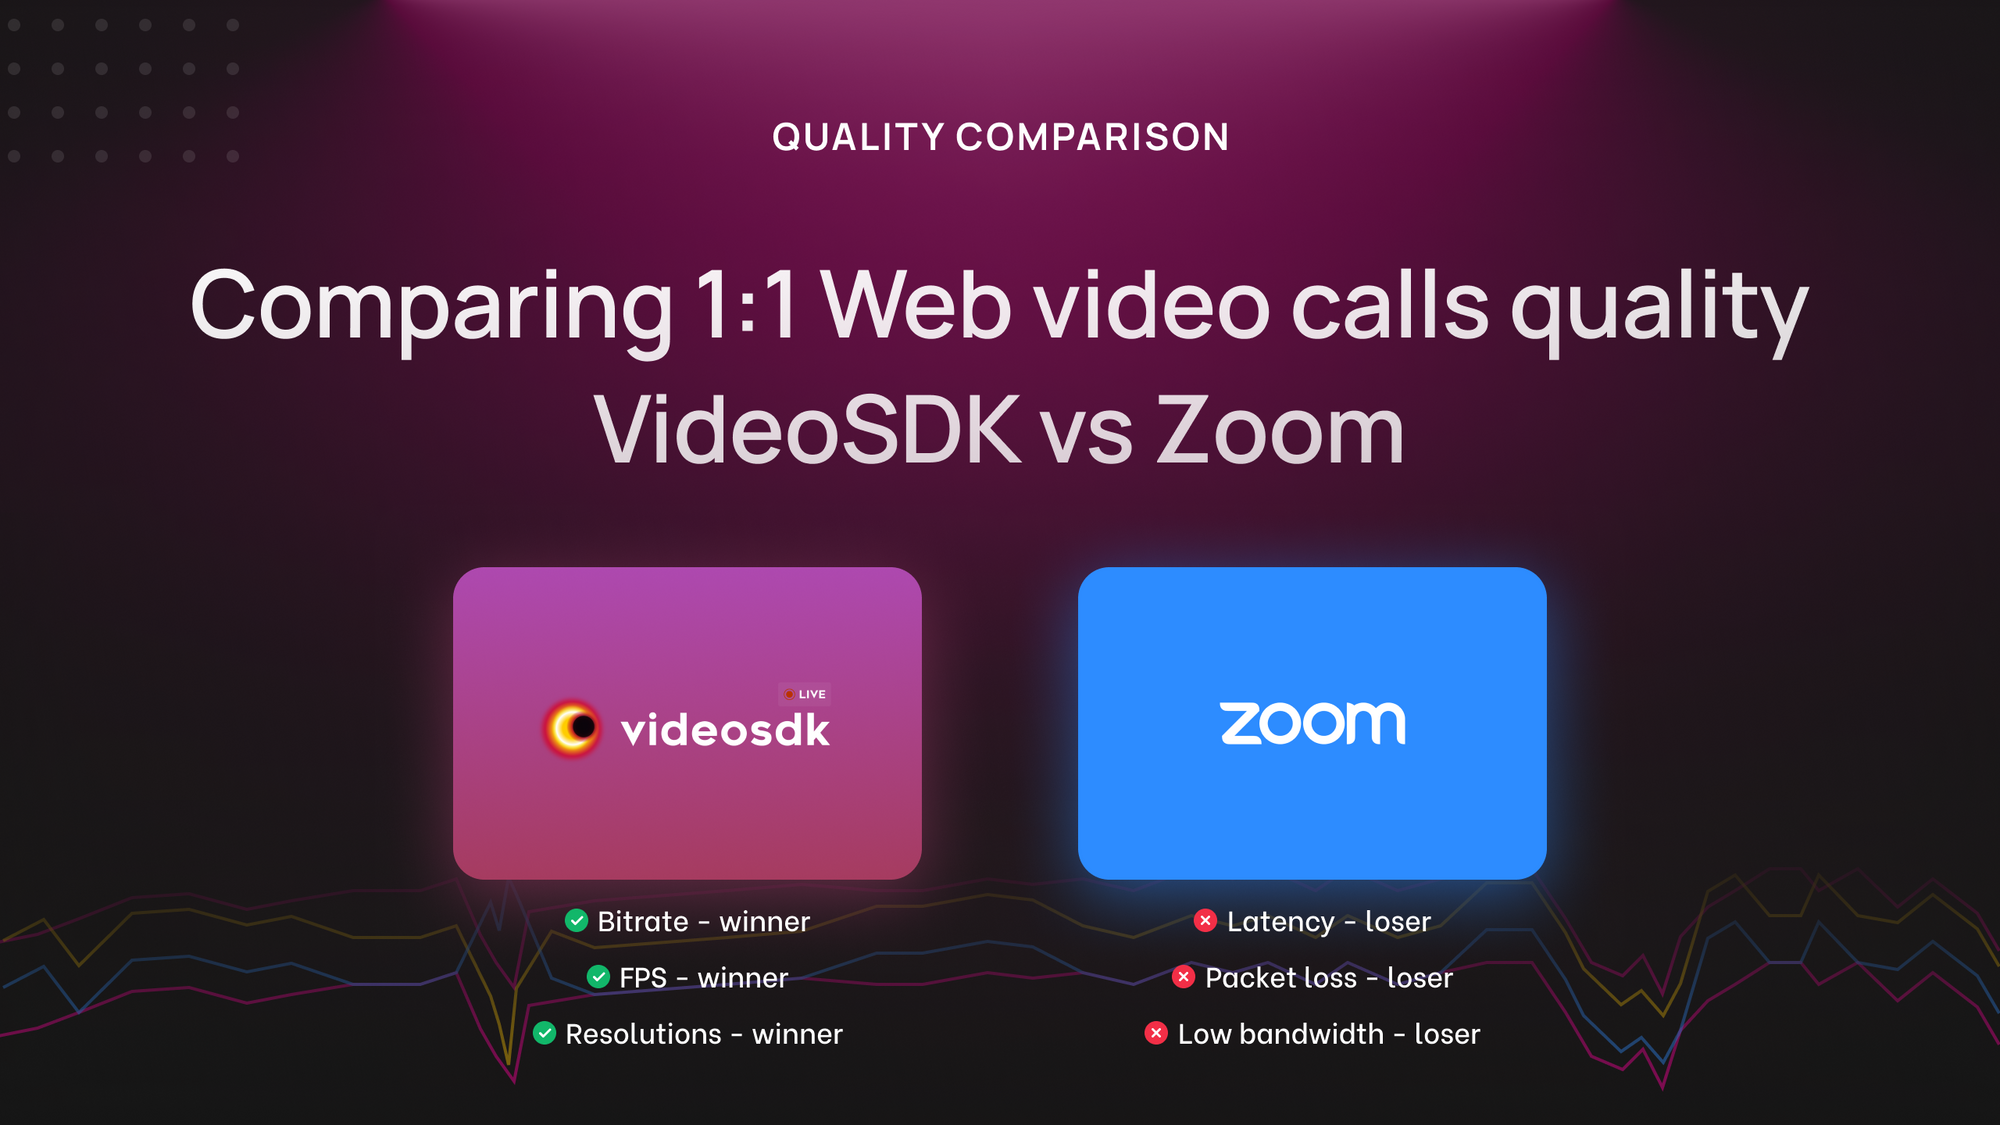 Quality Comparison: VideoSDK vs Zoom in Web 1:1 Video Calls